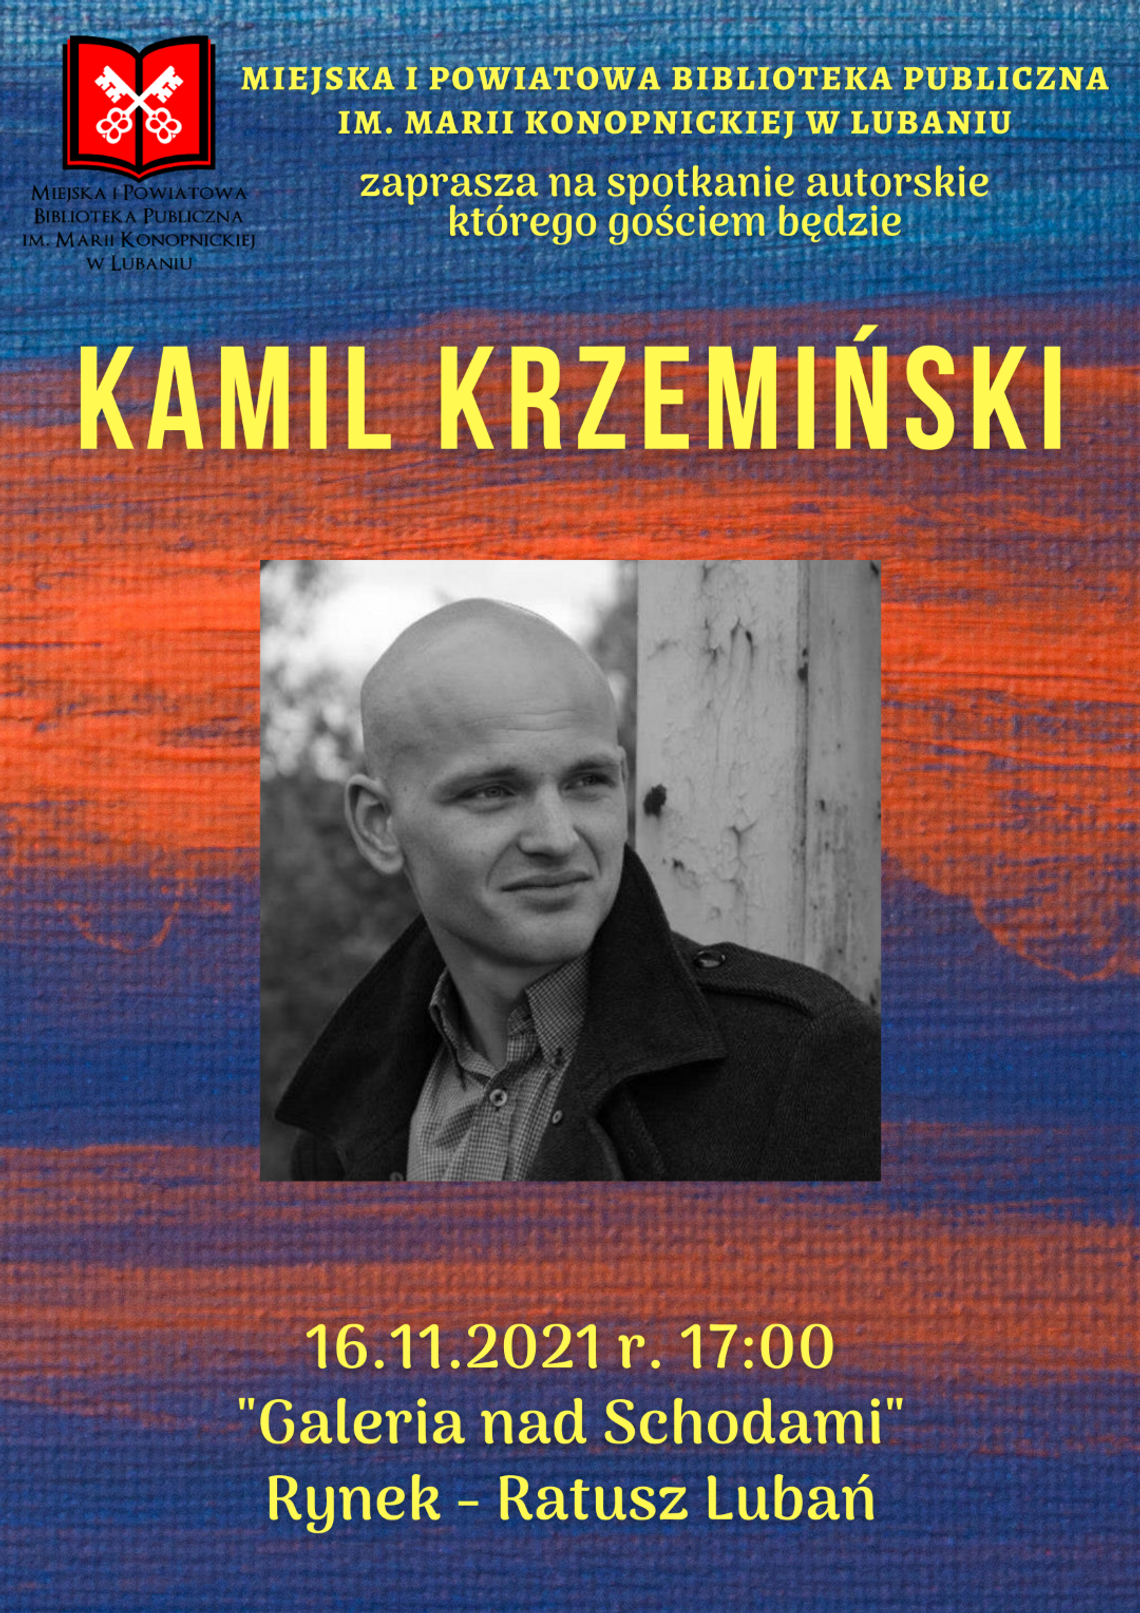 Kamil Krzemiński - spotkanie autorskie